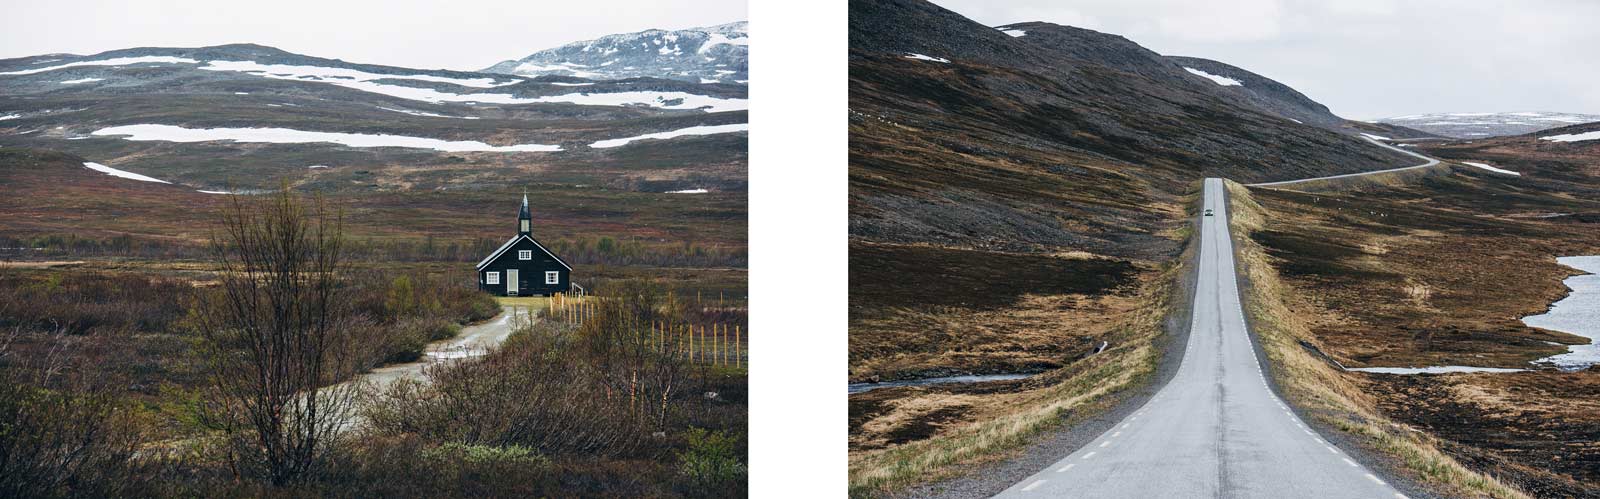 Paysages Norvege du Nord